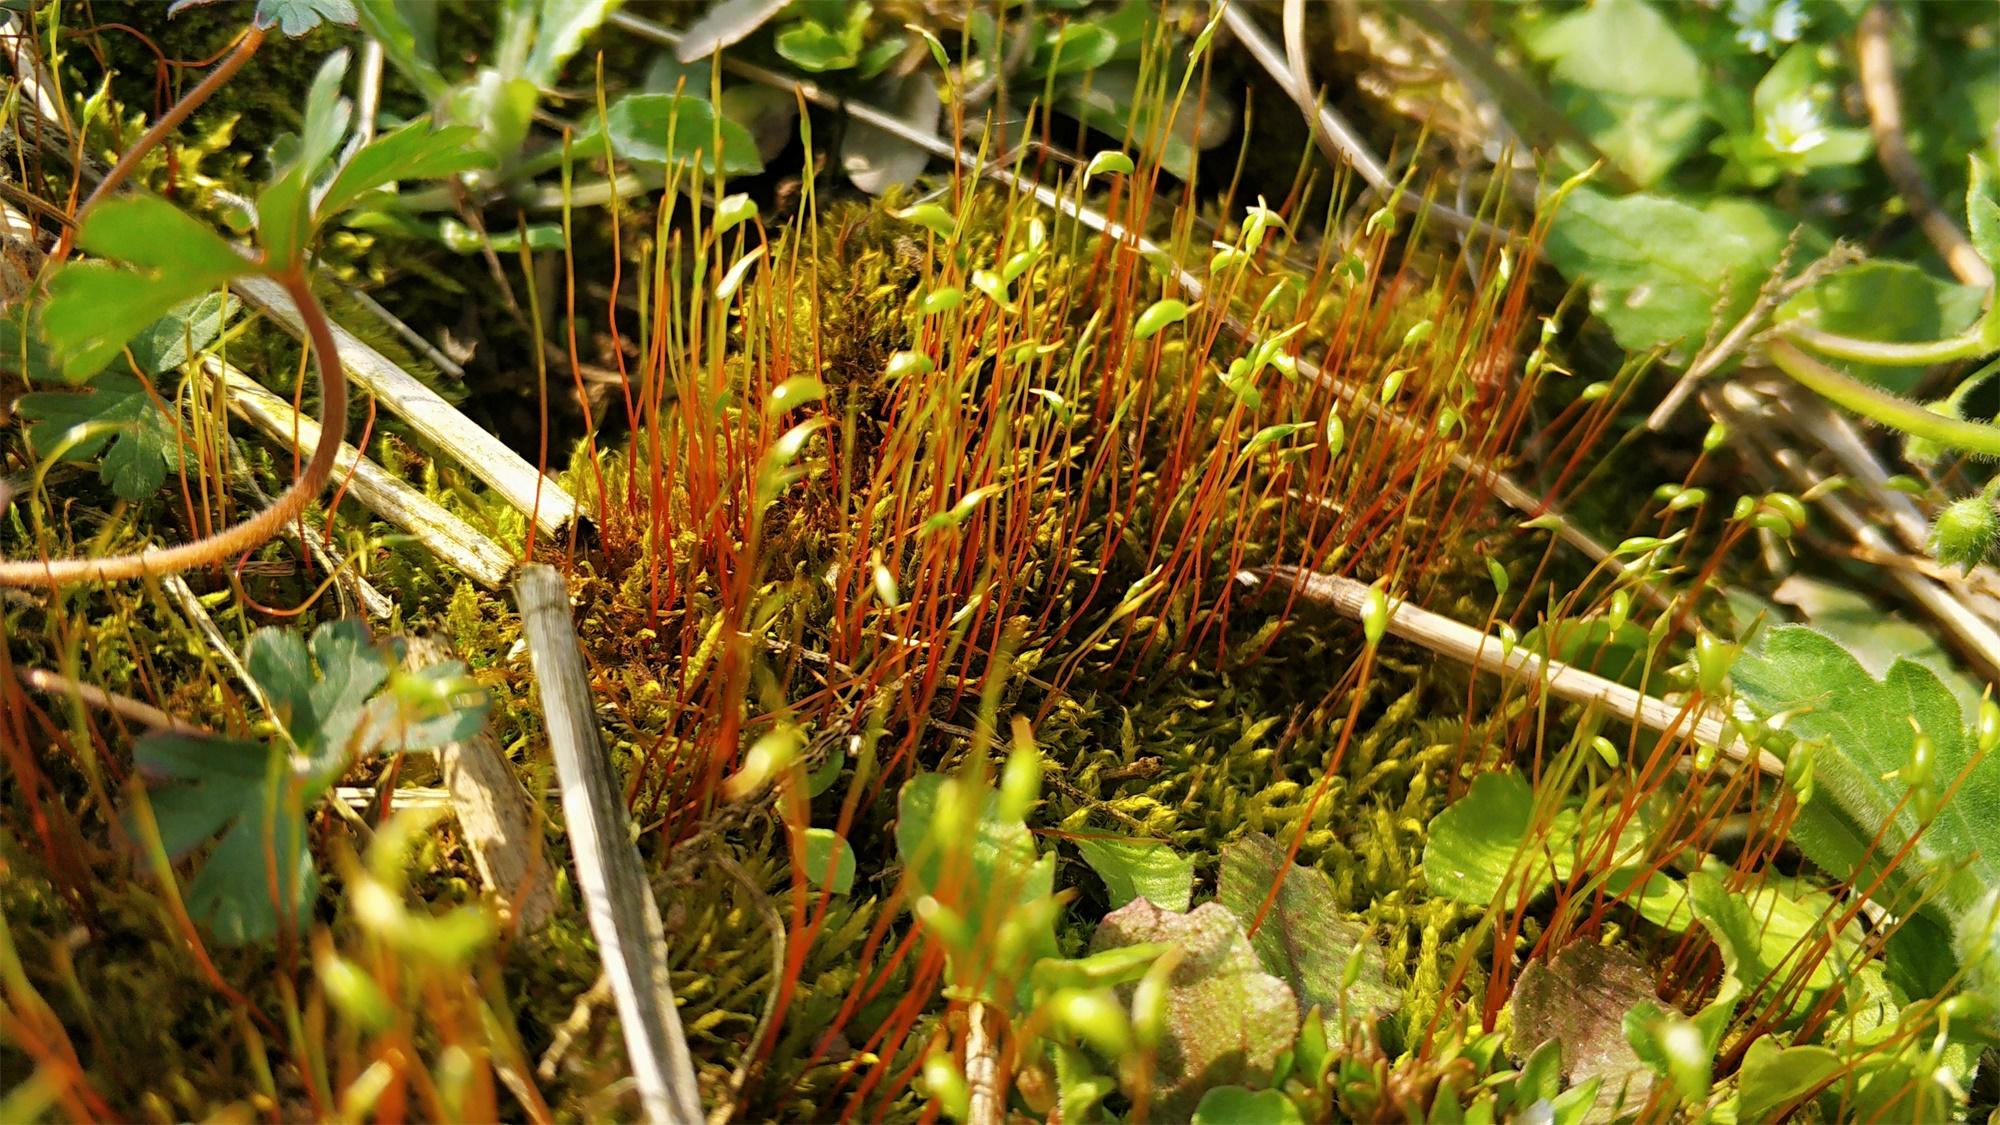 很多朋友可能不认识金发藓,其实在算是很常见的一种野生苔藓植物,不过